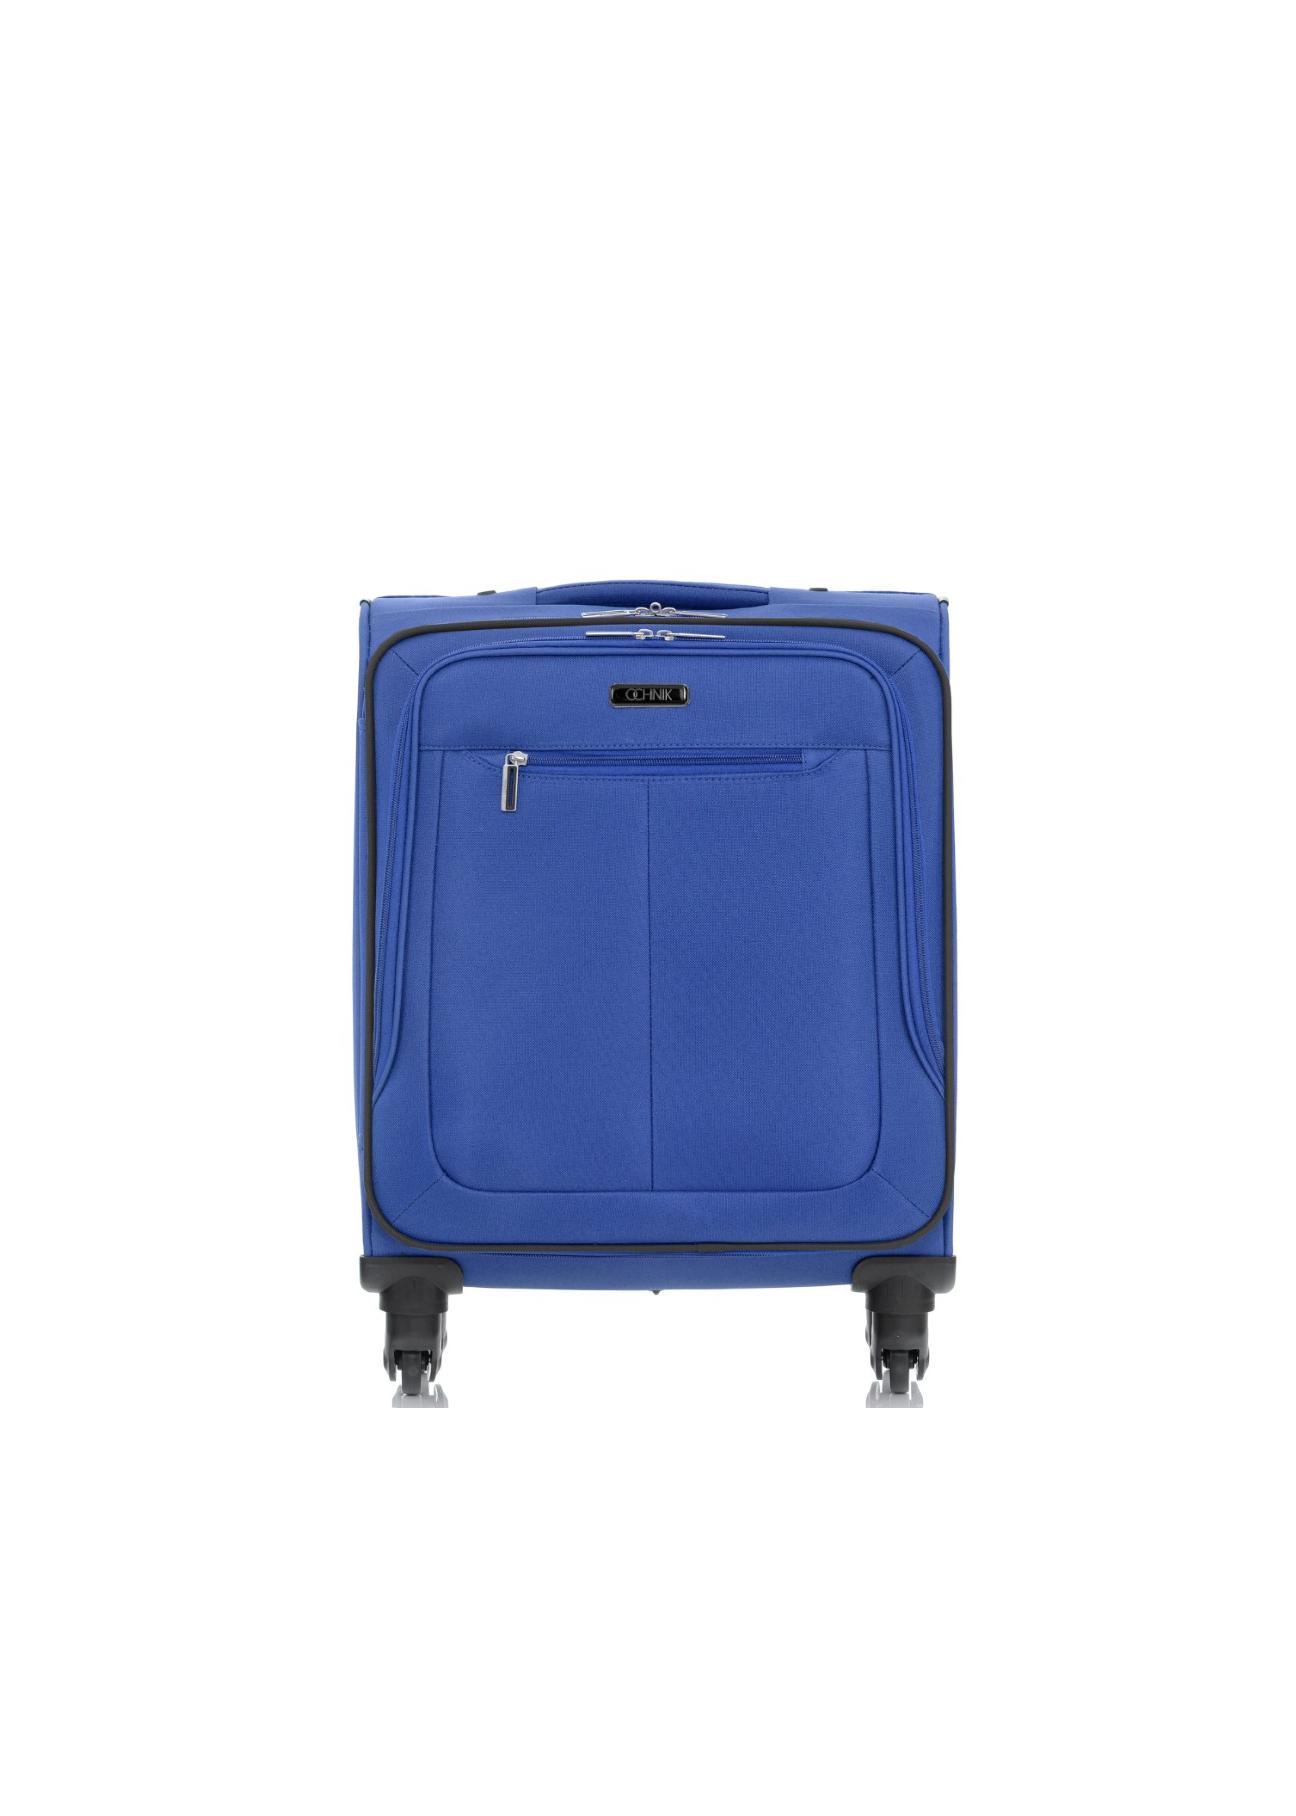 Mała walizka na kółkach WALNY-0019-61-20(W17)